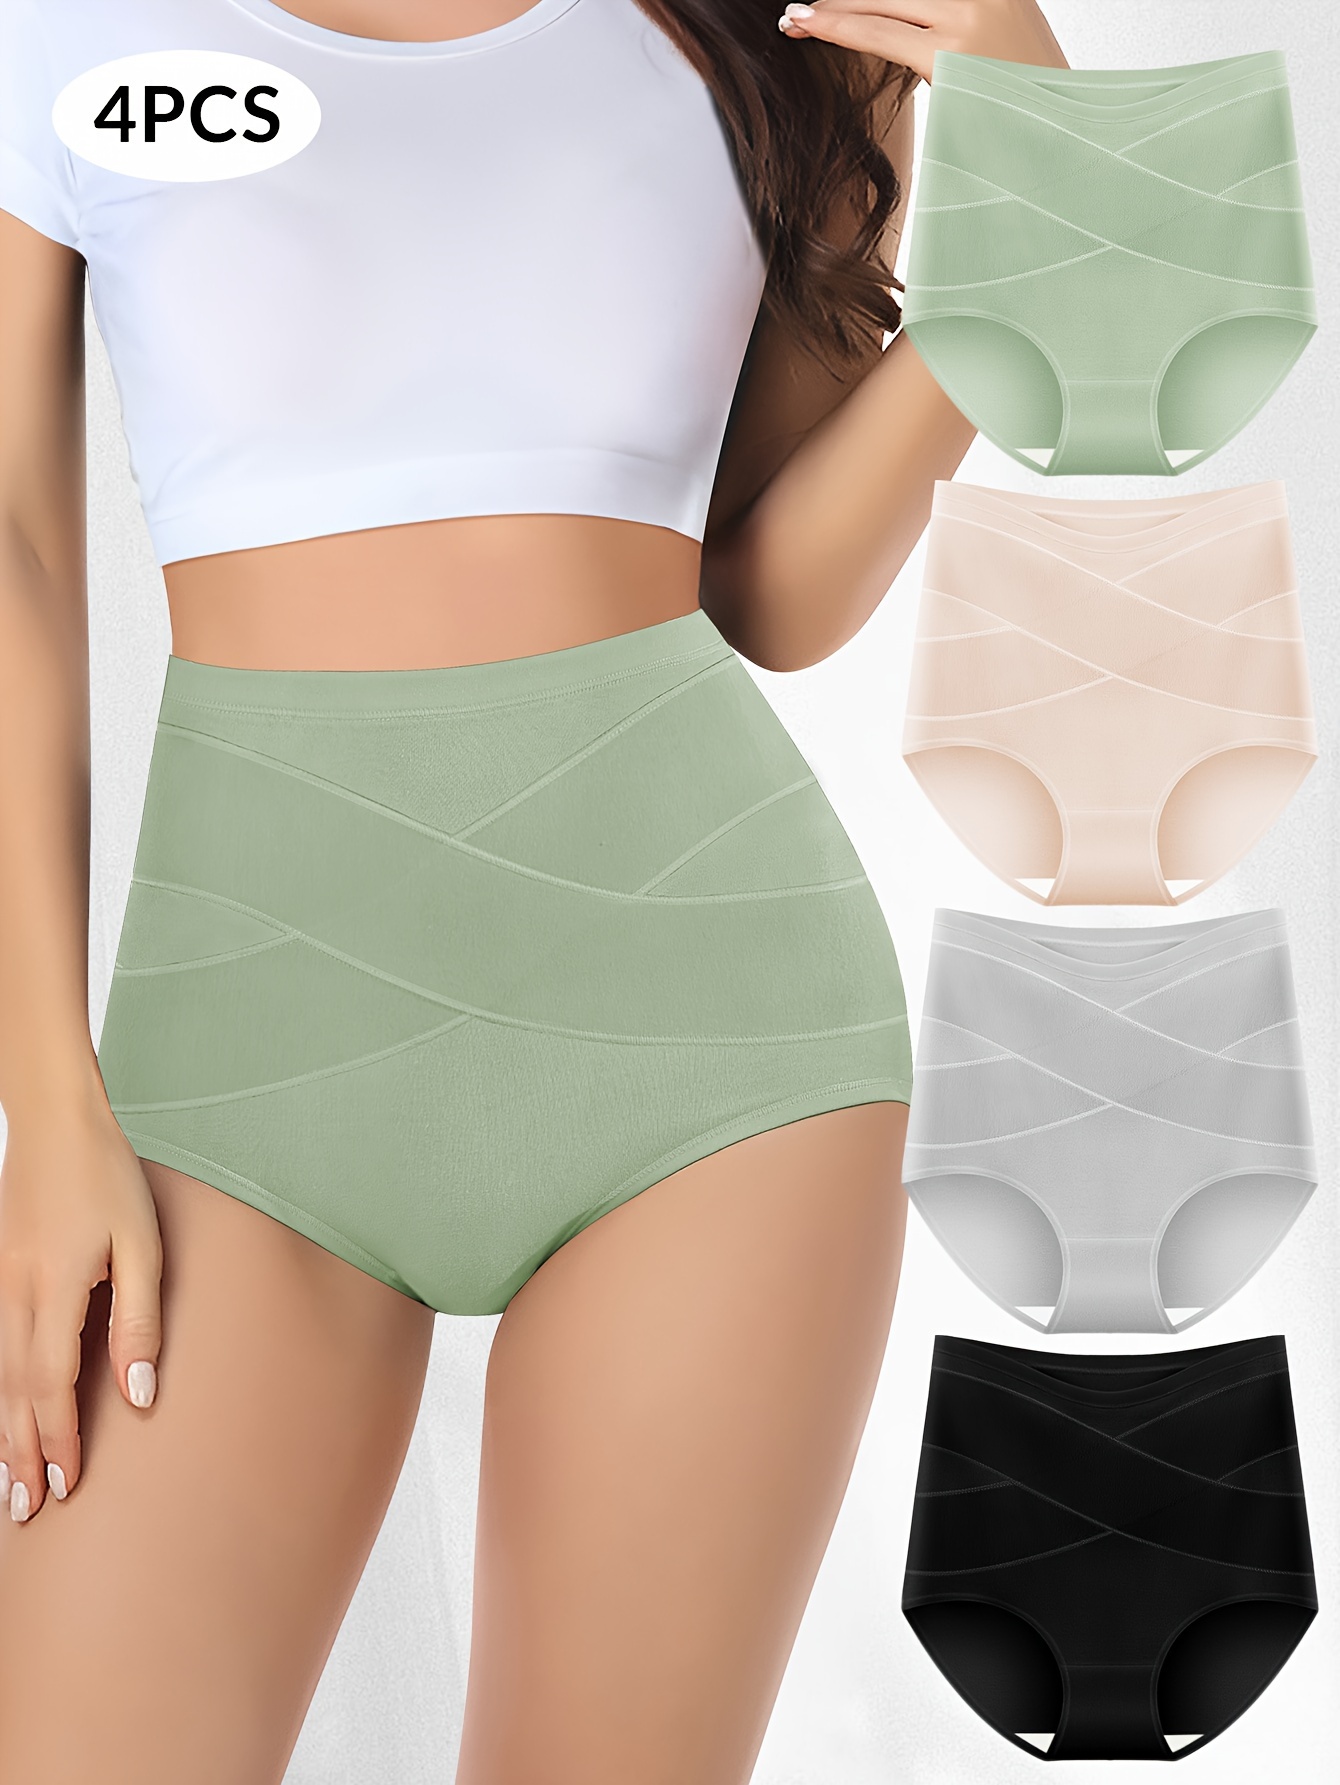 LEEy-world Seamless Underwear for Women Underwear High Waist